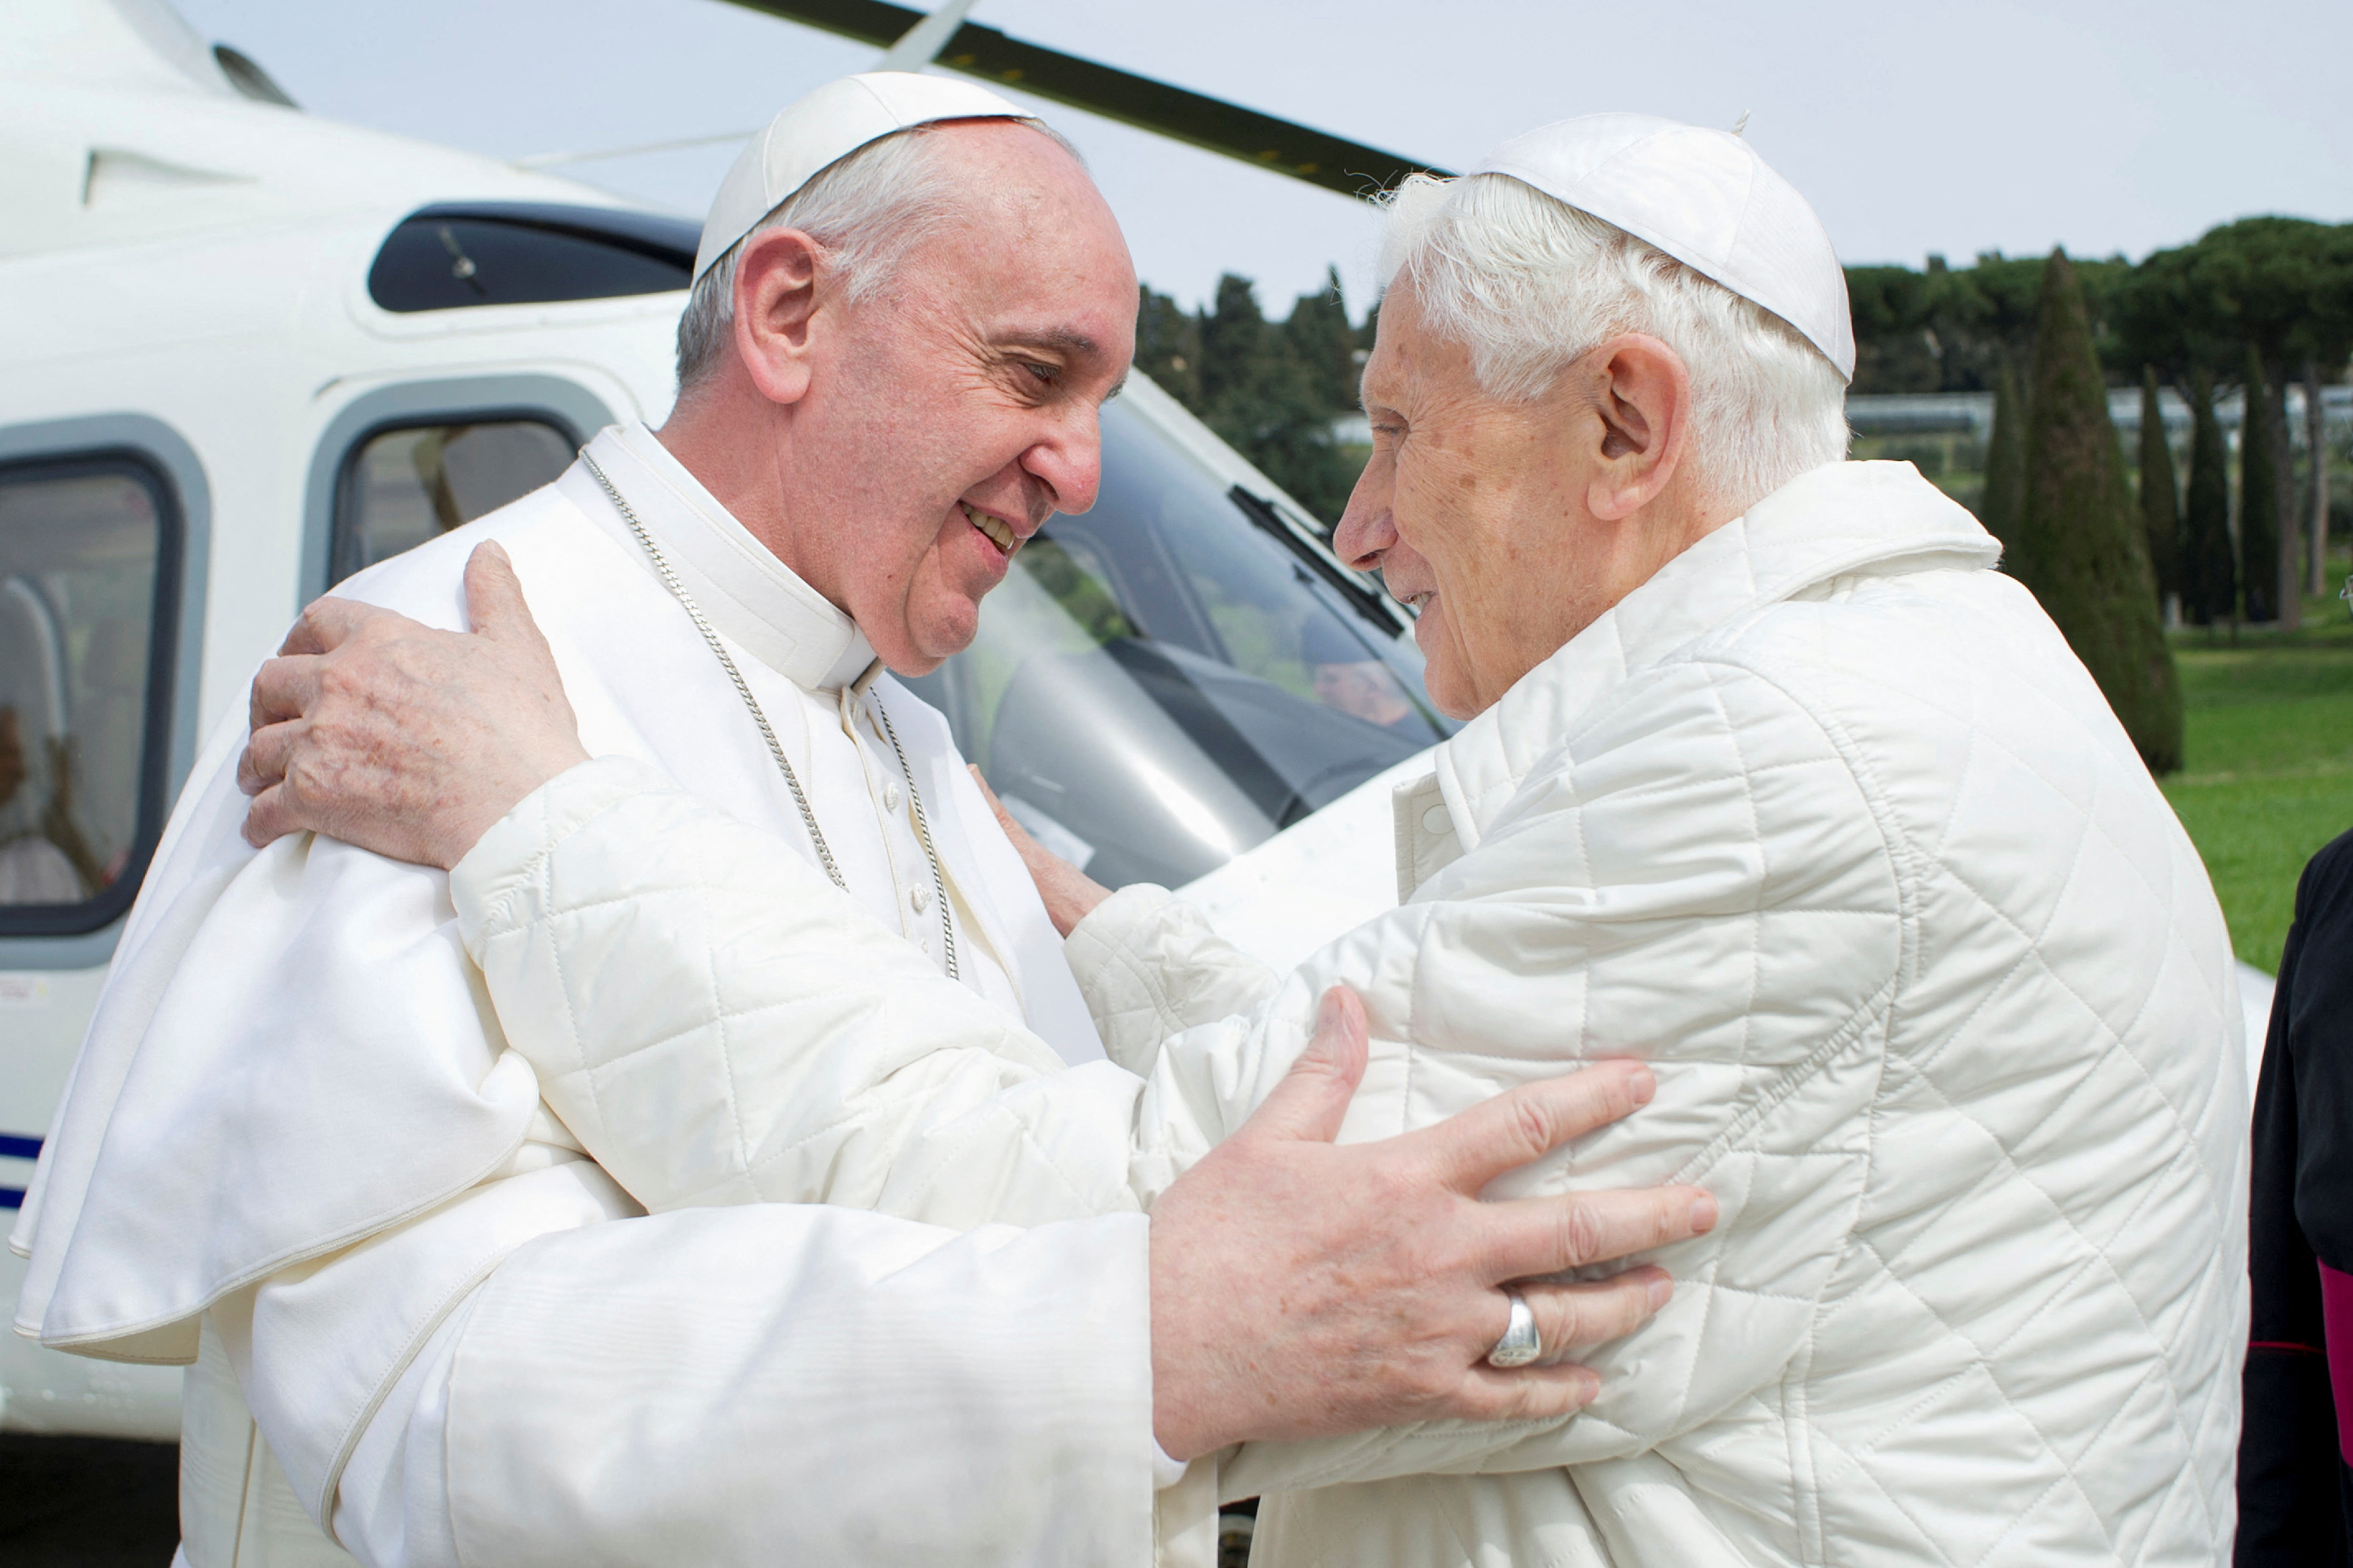 FOTO DE ARCHIVO: El papa Francisco (i) abraza al papa emérito Benedicto XVI a su llegada a la residencia de verano de Castel Gandolfo el 23 de marzo de 2013 (Reuters)